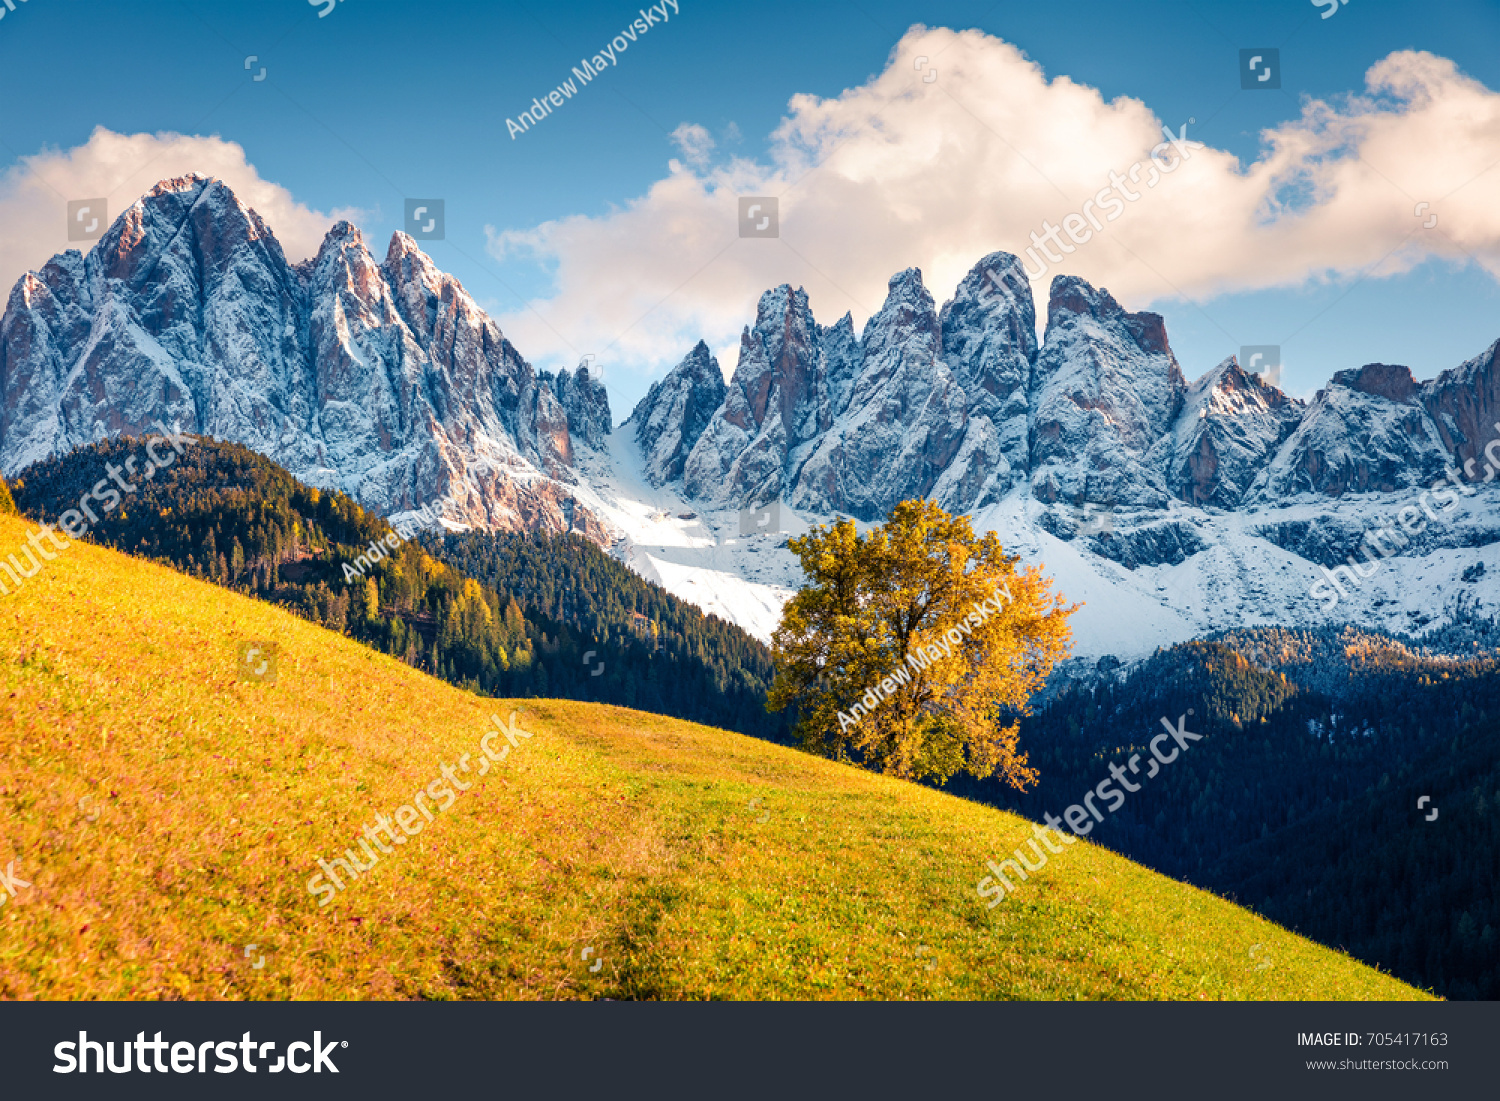 ガイスラーやオードル ドロミーツ グループの前にある サンタ マグダレナの村の丘の素晴らしい景色 イタリア ヨーロッパ ドロマイトアルプスのカラフルな秋の風景 自然のコンセプト背景に美しさ の写真素材 今すぐ編集